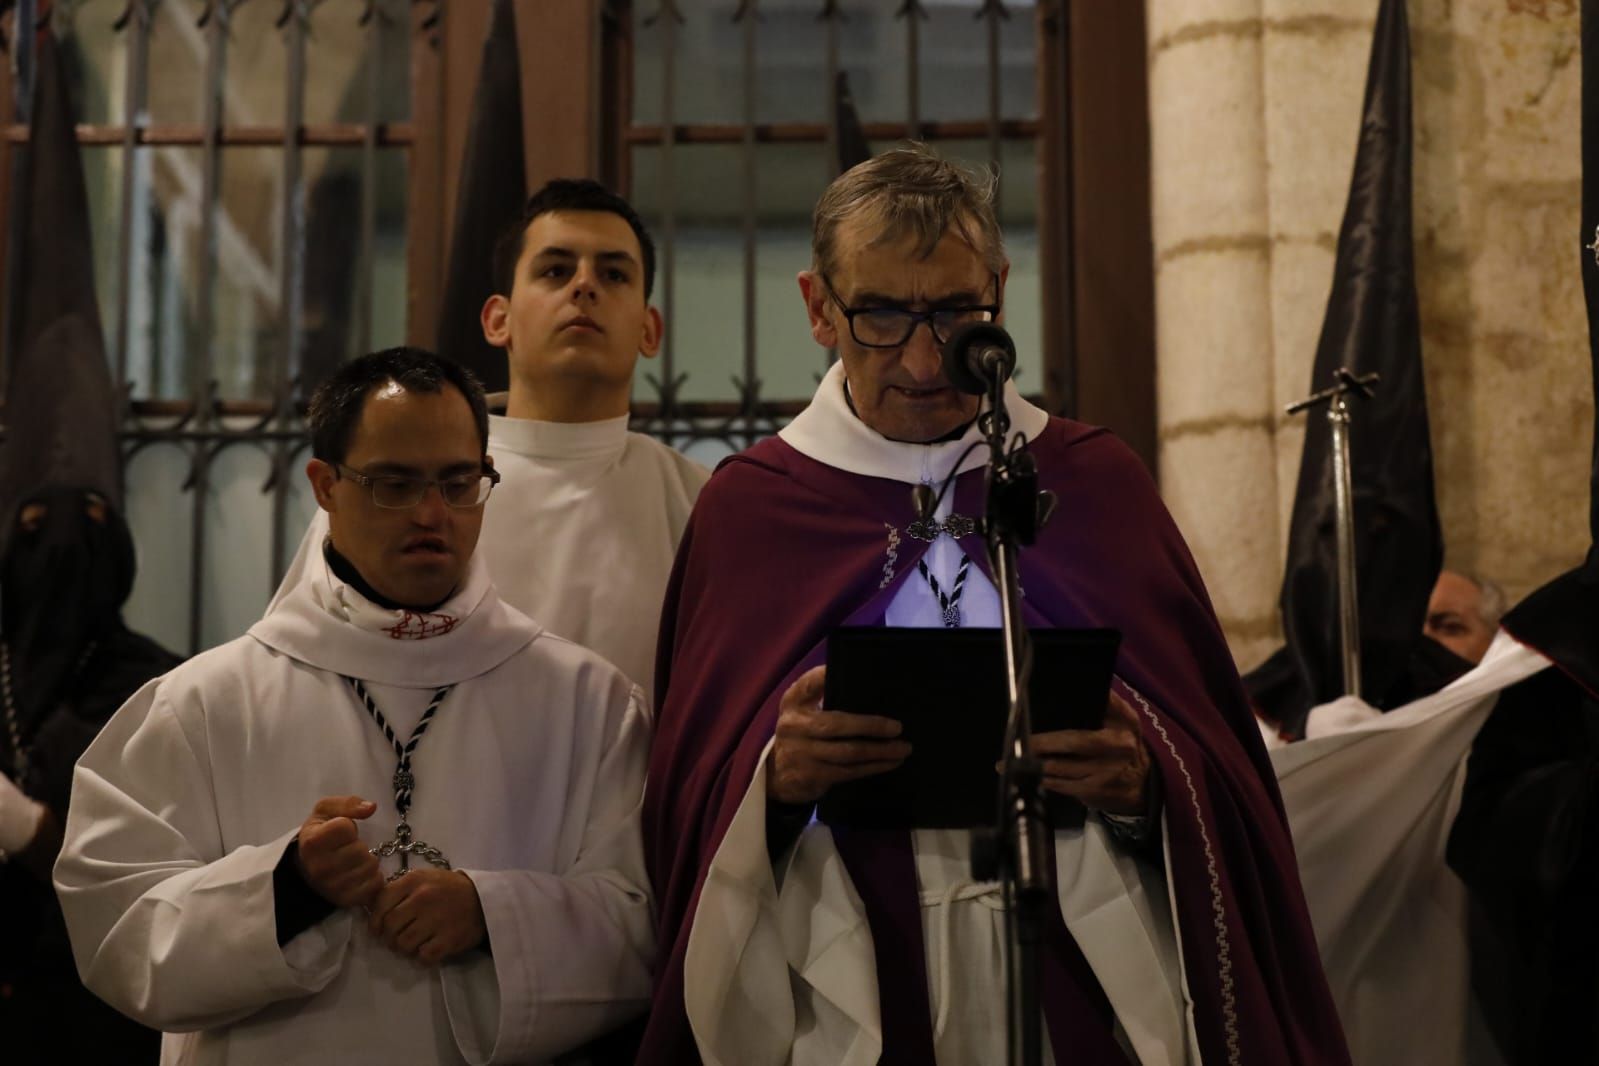 GALERÍA | Las mejores imágenes de la procesión de la Tercera Caída